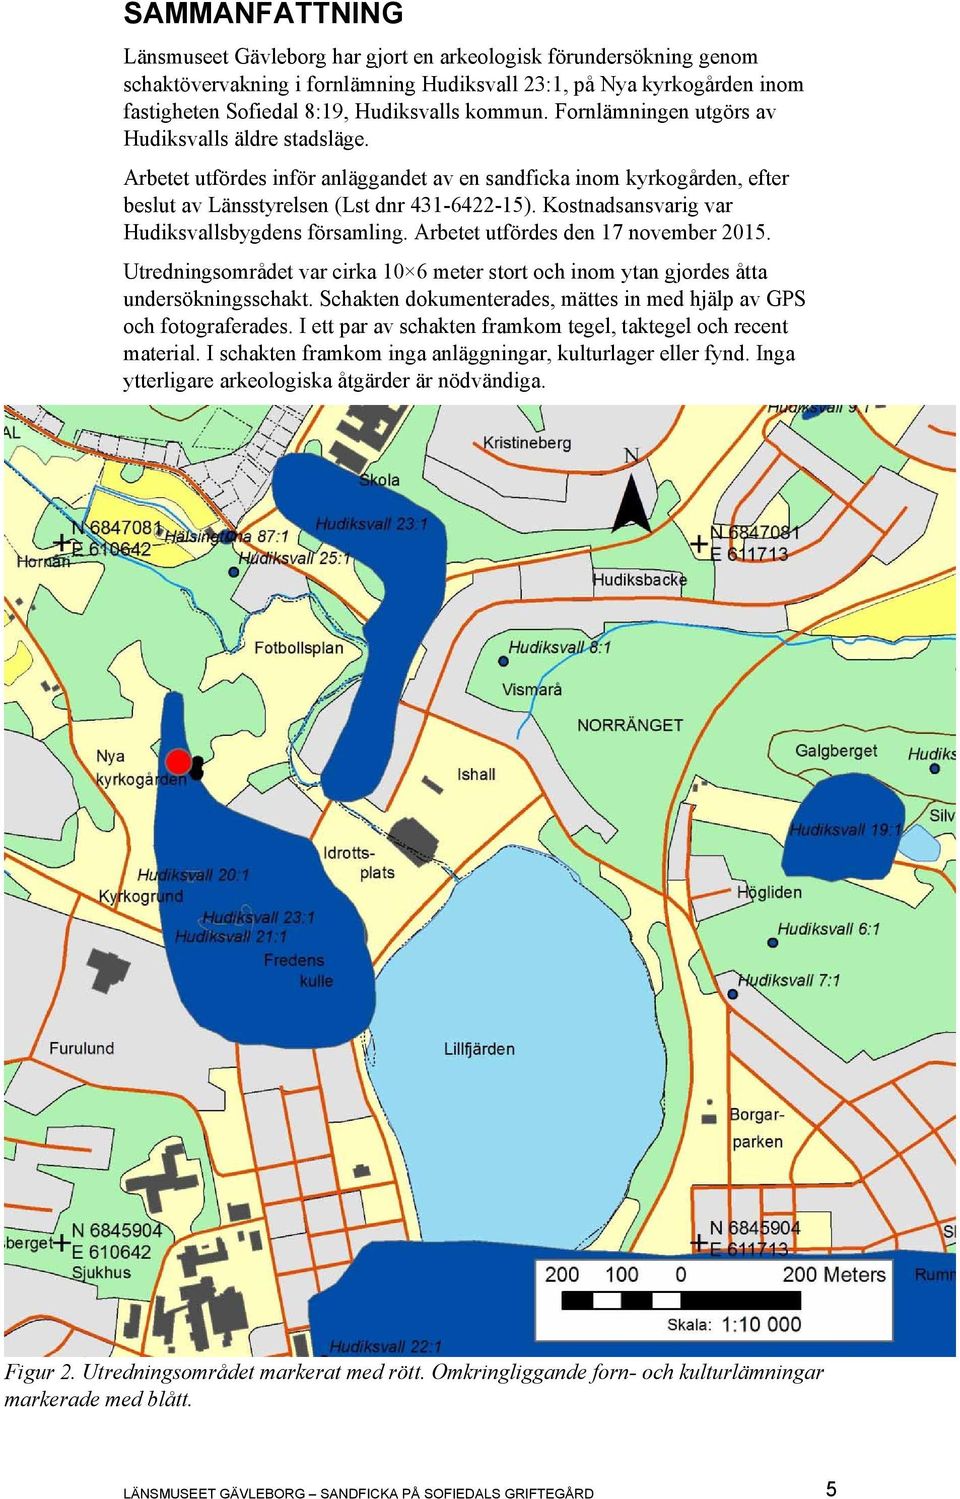 Kostnadsansvarig var Hudiksvallsbygdens församling. Arbetet utfördes den 17 november 2015. Utredningsområdet var cirka 10 6 meter stort och inom ytan gjordes åtta undersökningsschakt.